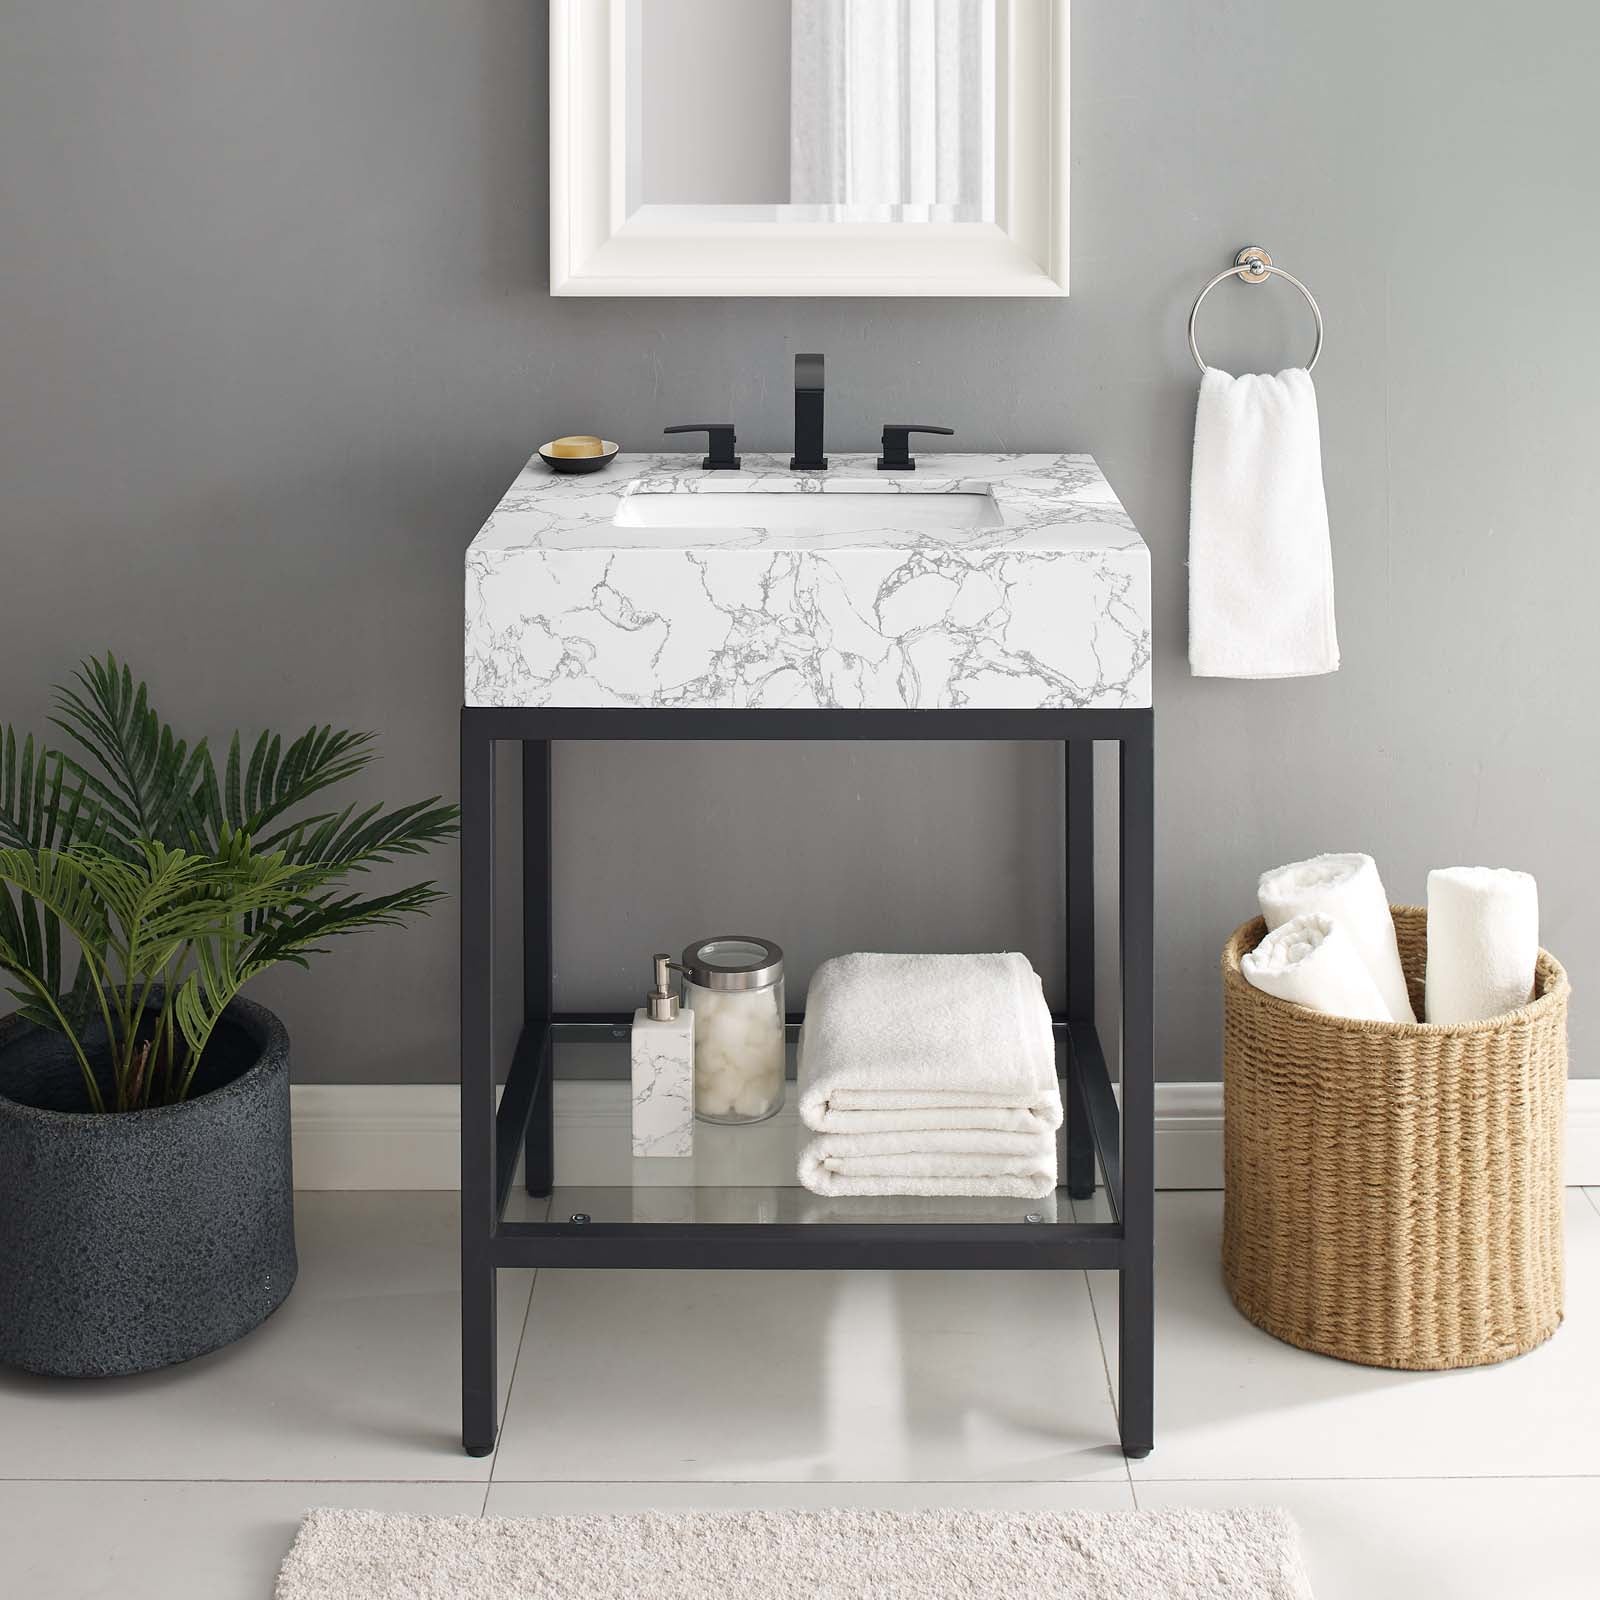 Kingsley 26" Black Stainless Steel Bathroom Vanity-Bathroom Vanity-Modway-Wall2Wall Furnishings